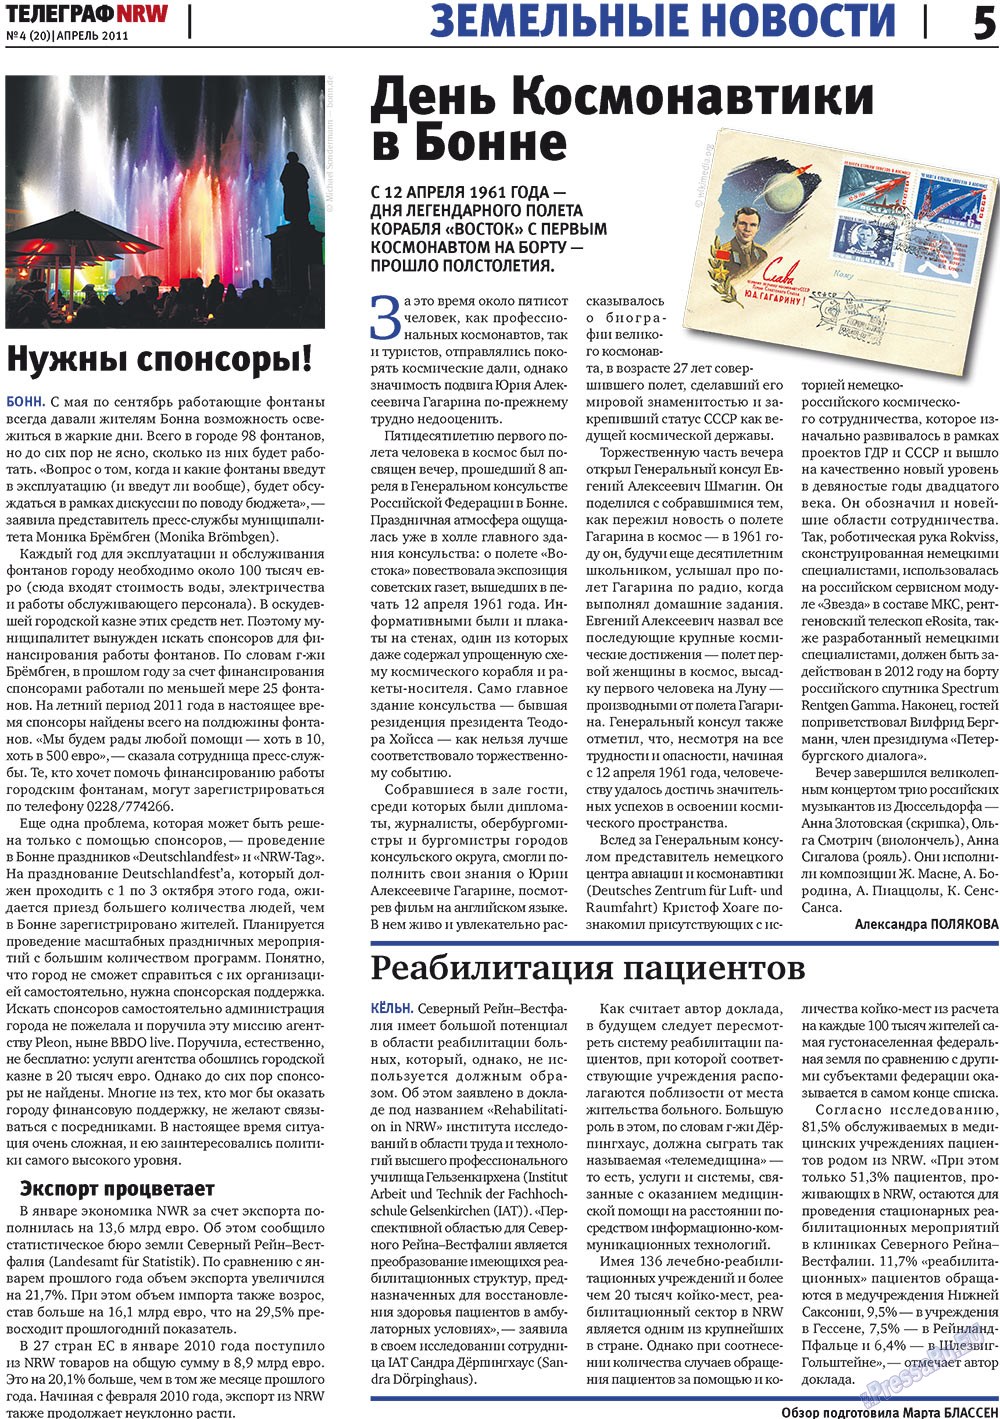 Телеграф NRW (газета). 2011 год, номер 4, стр. 5